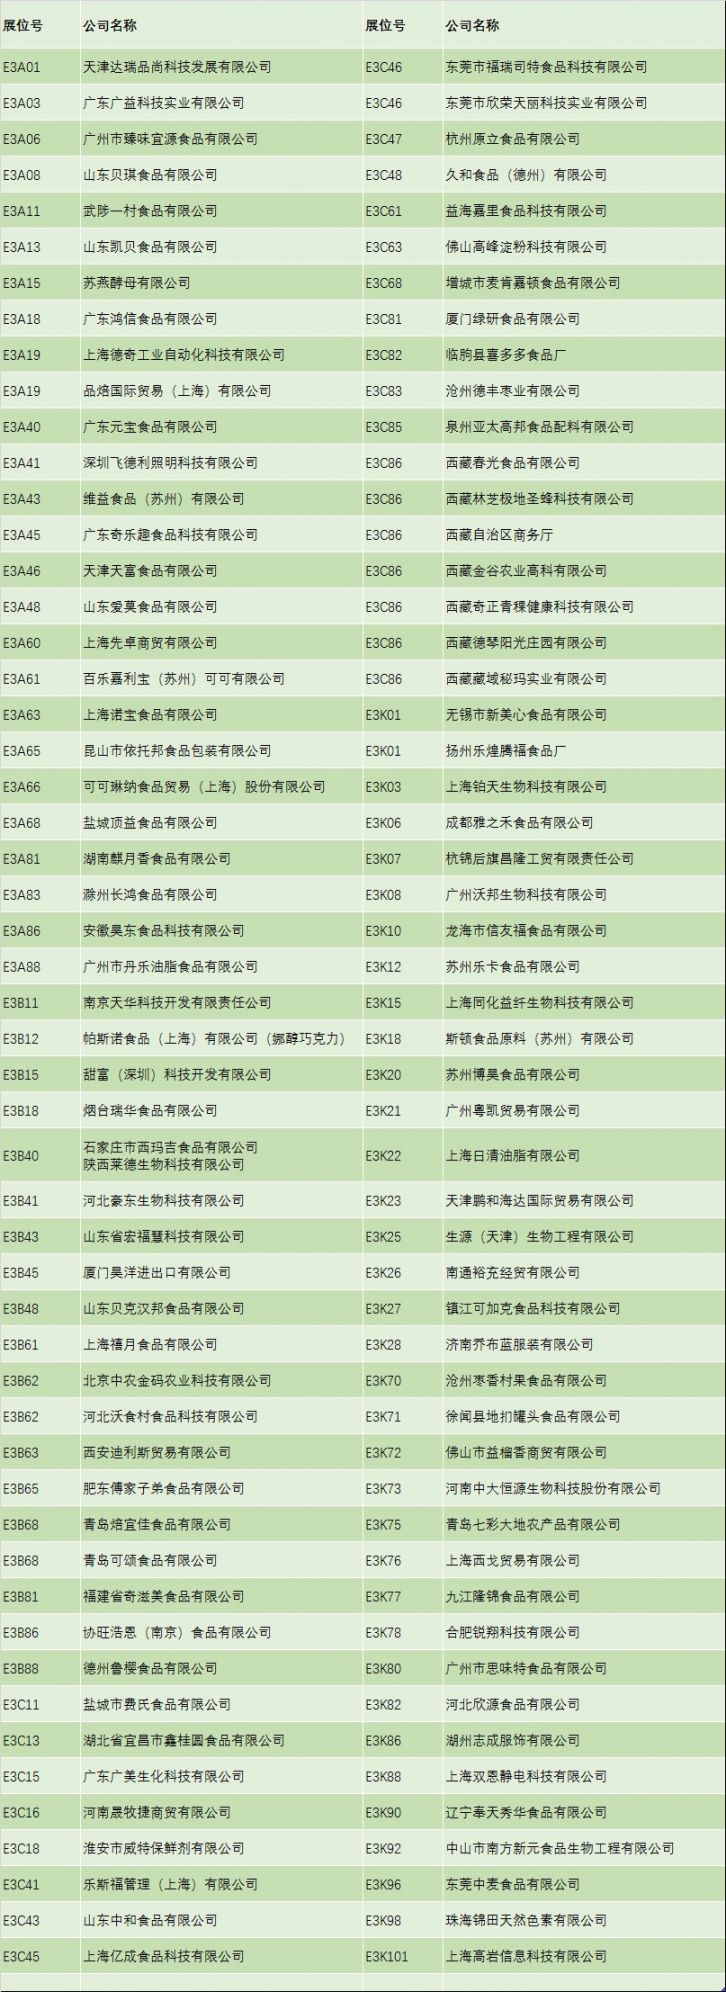 2020上海烘焙展参展企业名单